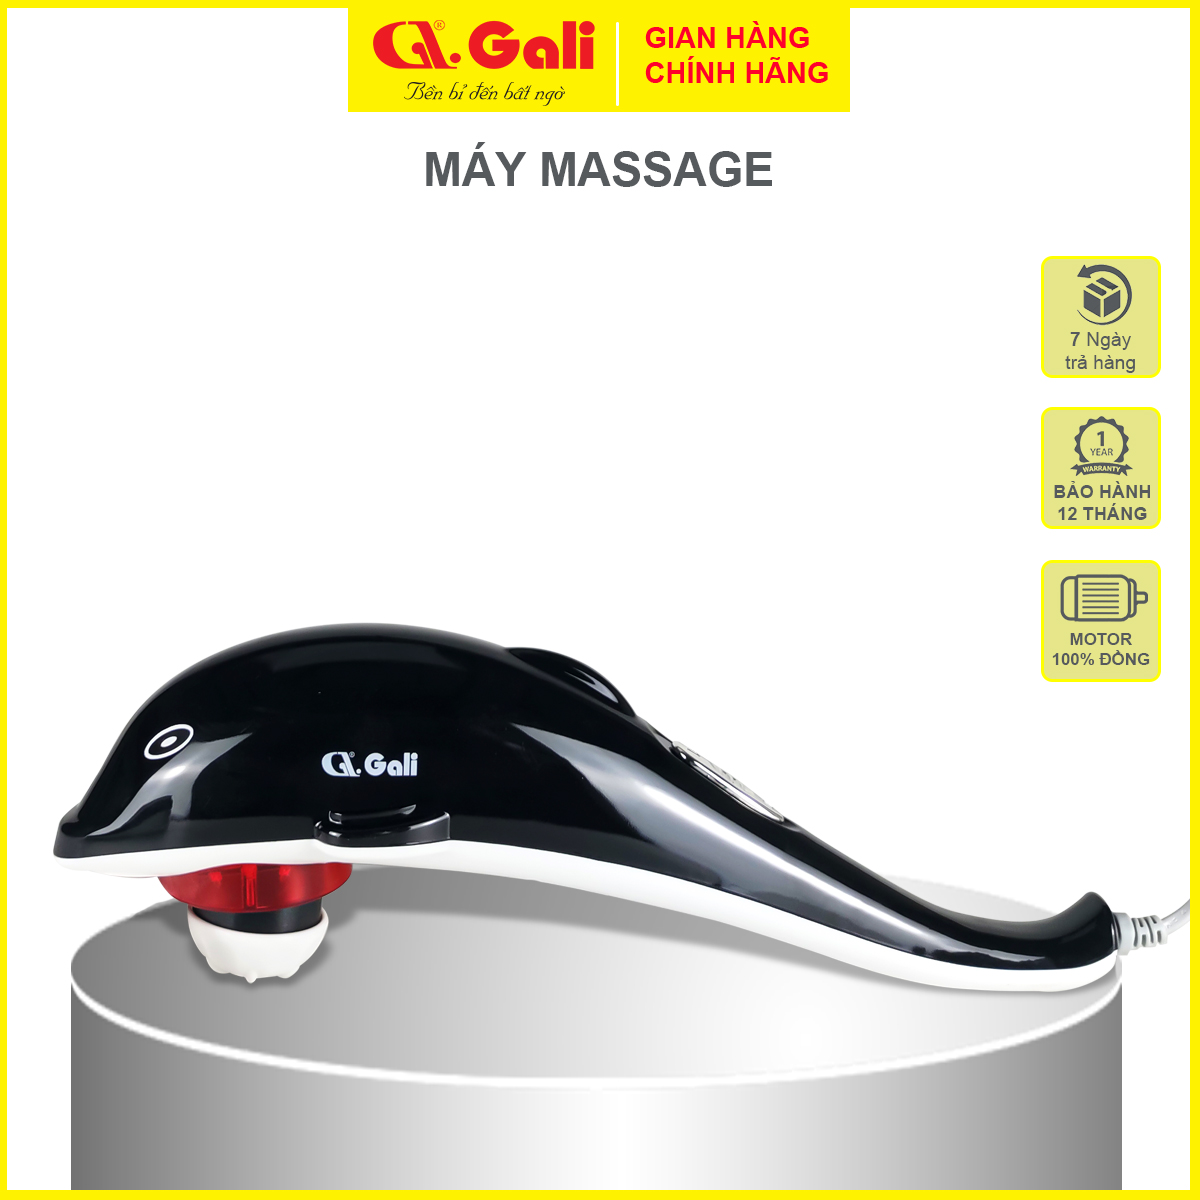 Máy massage thư giãn toàn thân Gali 20w, thiết kế cầm tay, tiện lợi, nhỏ gọn, sản phẩm chính hãng bảo hành 12 tháng